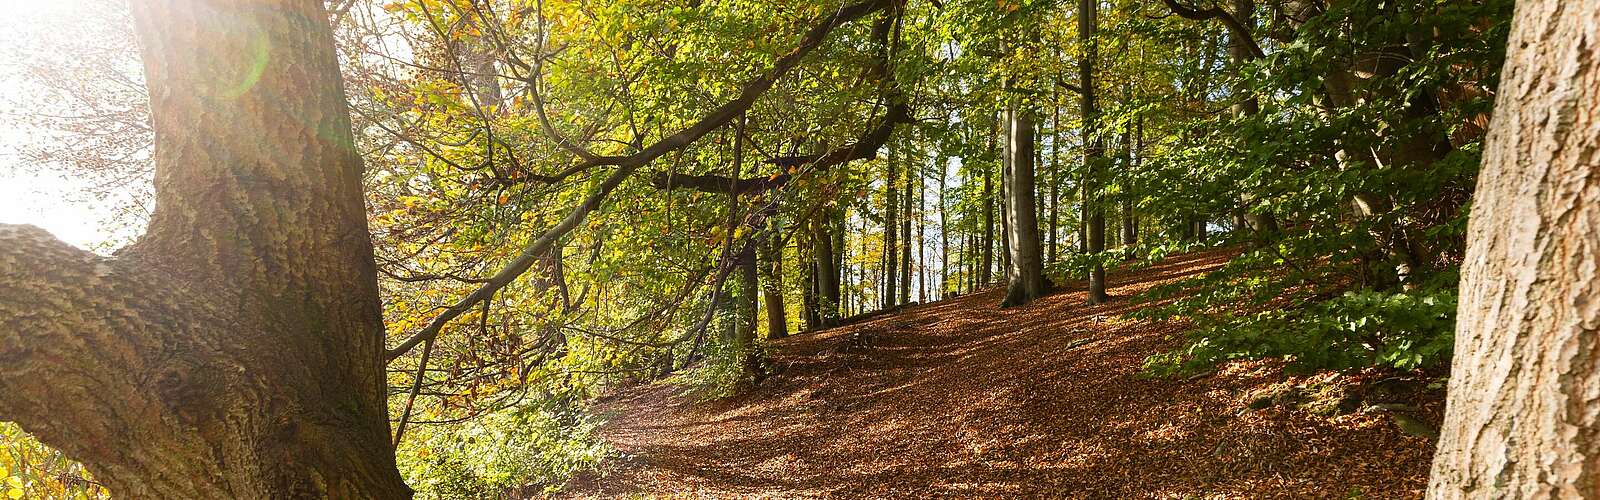 Herbstlicher Wald am Hellsee,
        
    

        Foto: TMB-Fotoarchiv/Steffen Lehmann